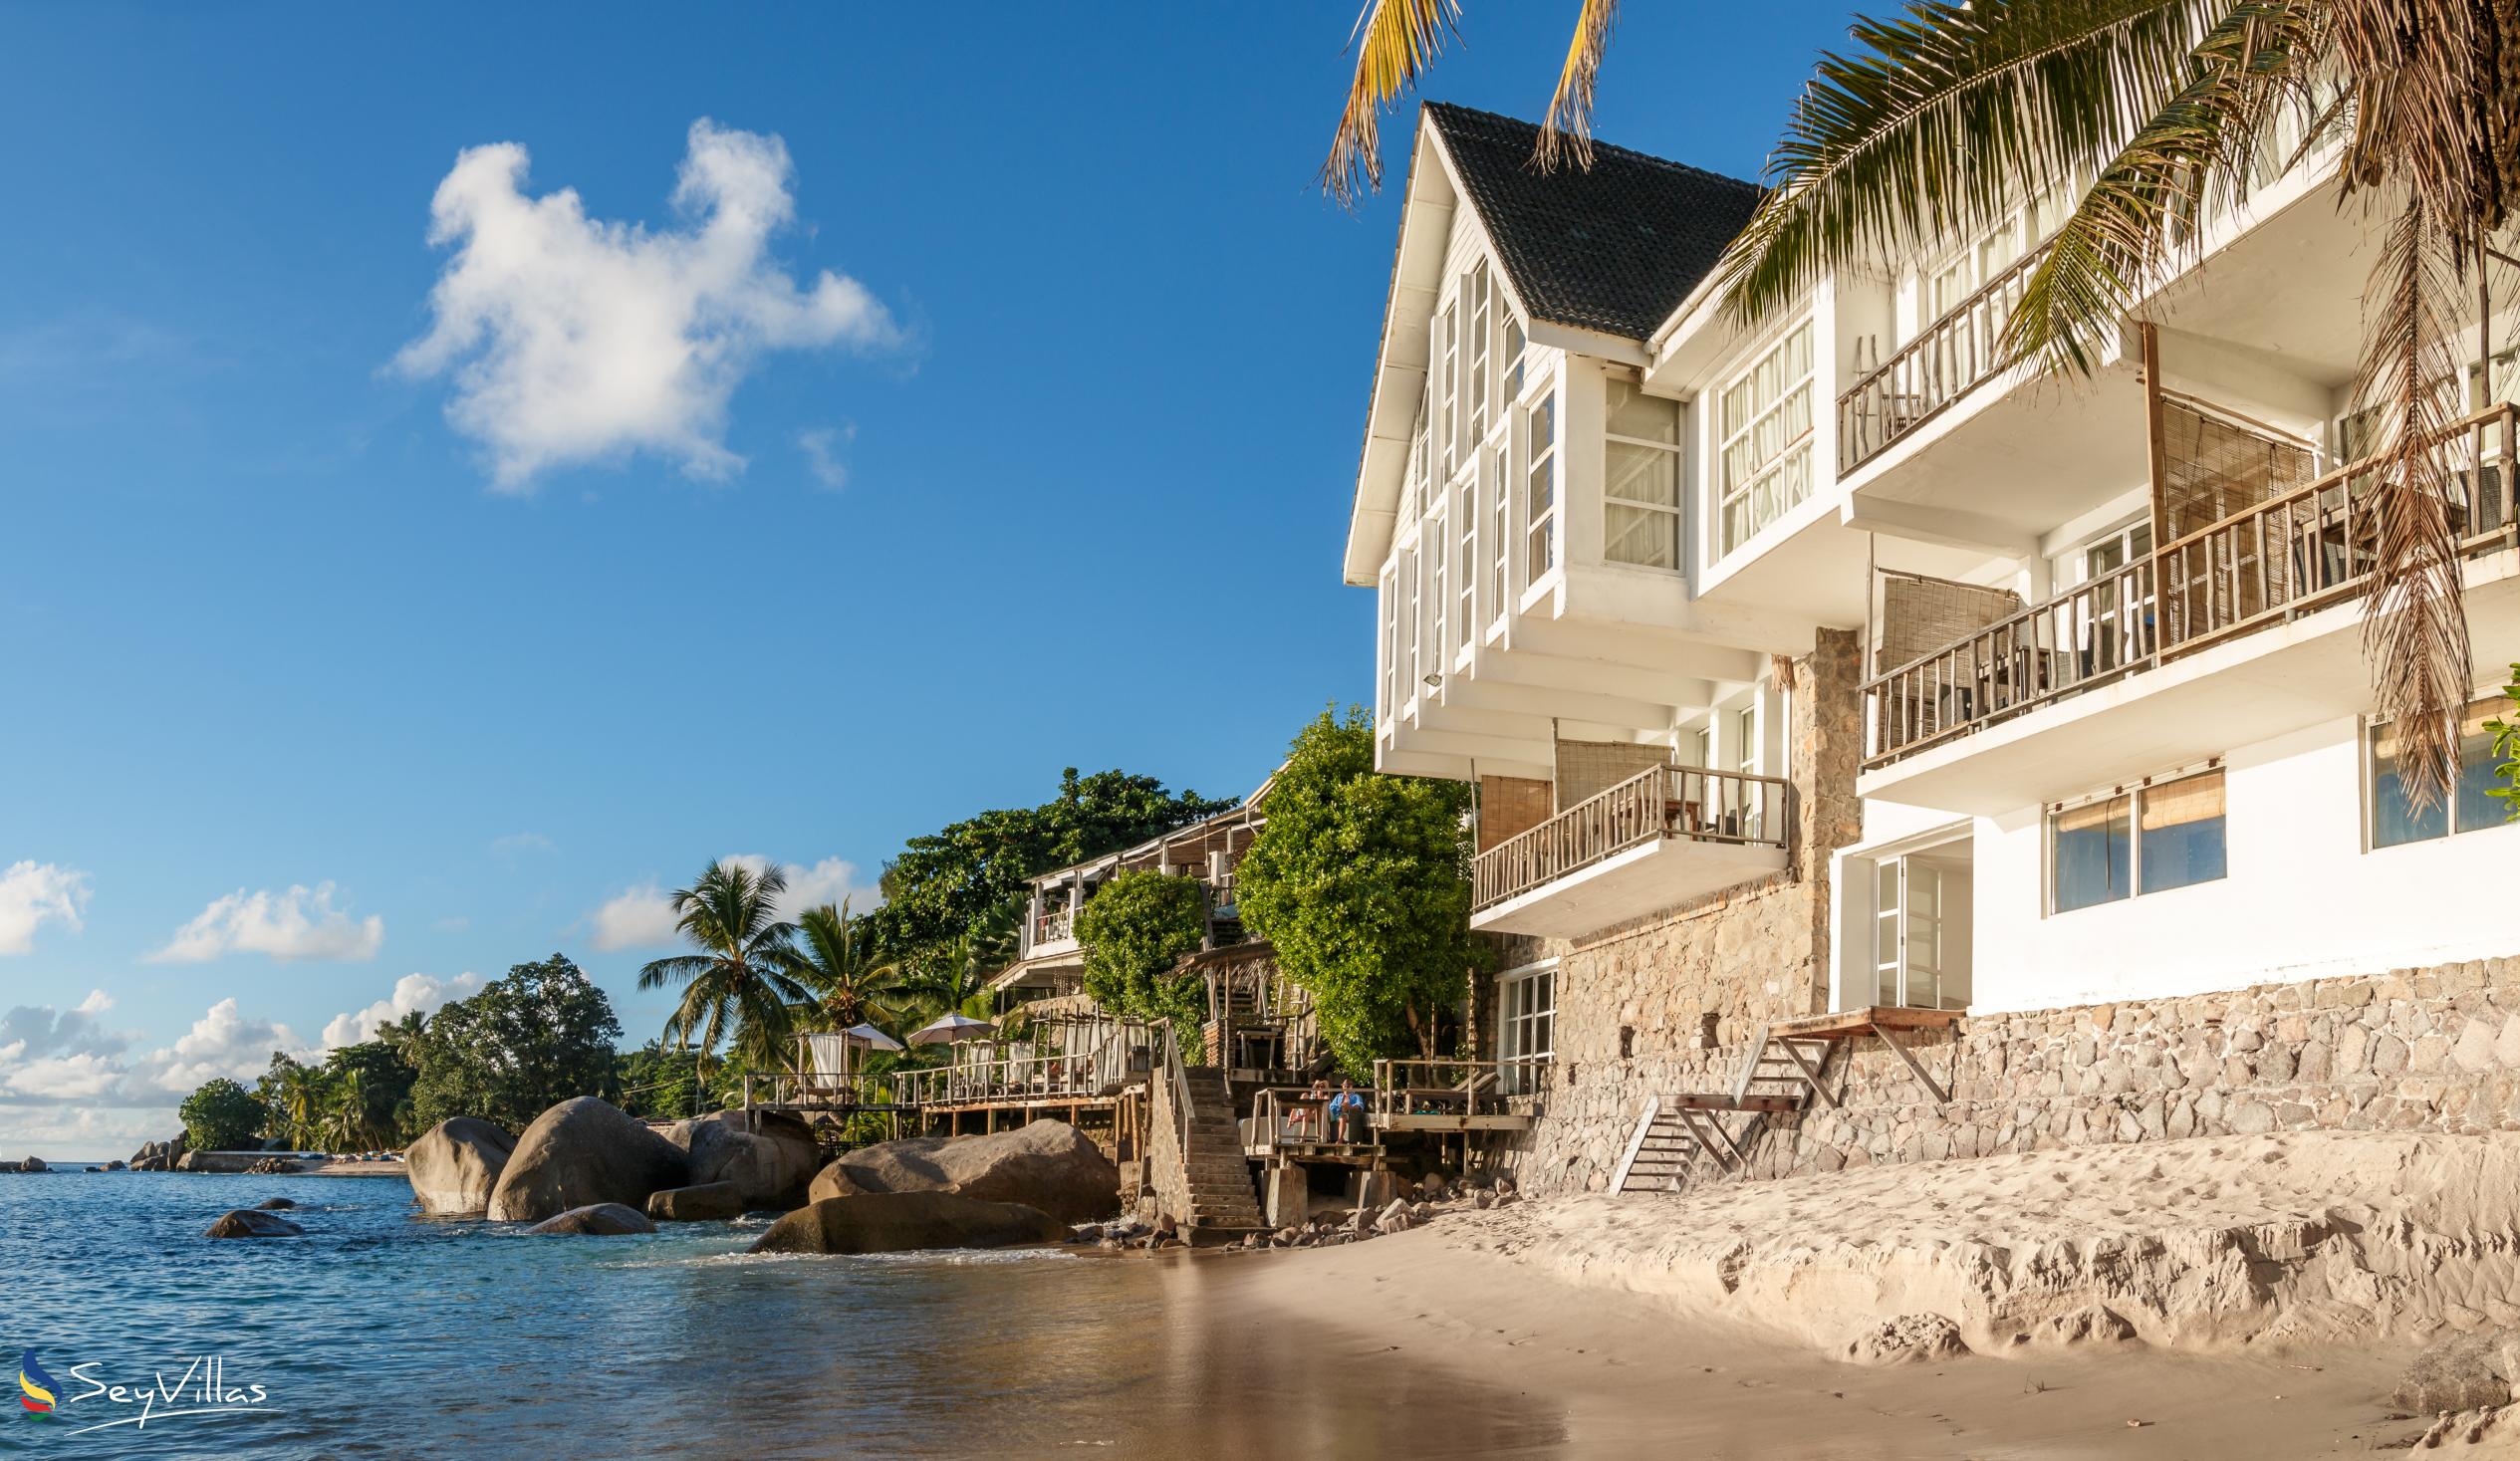 Foto 1: Bliss Hotel - Extérieur - Mahé (Seychelles)